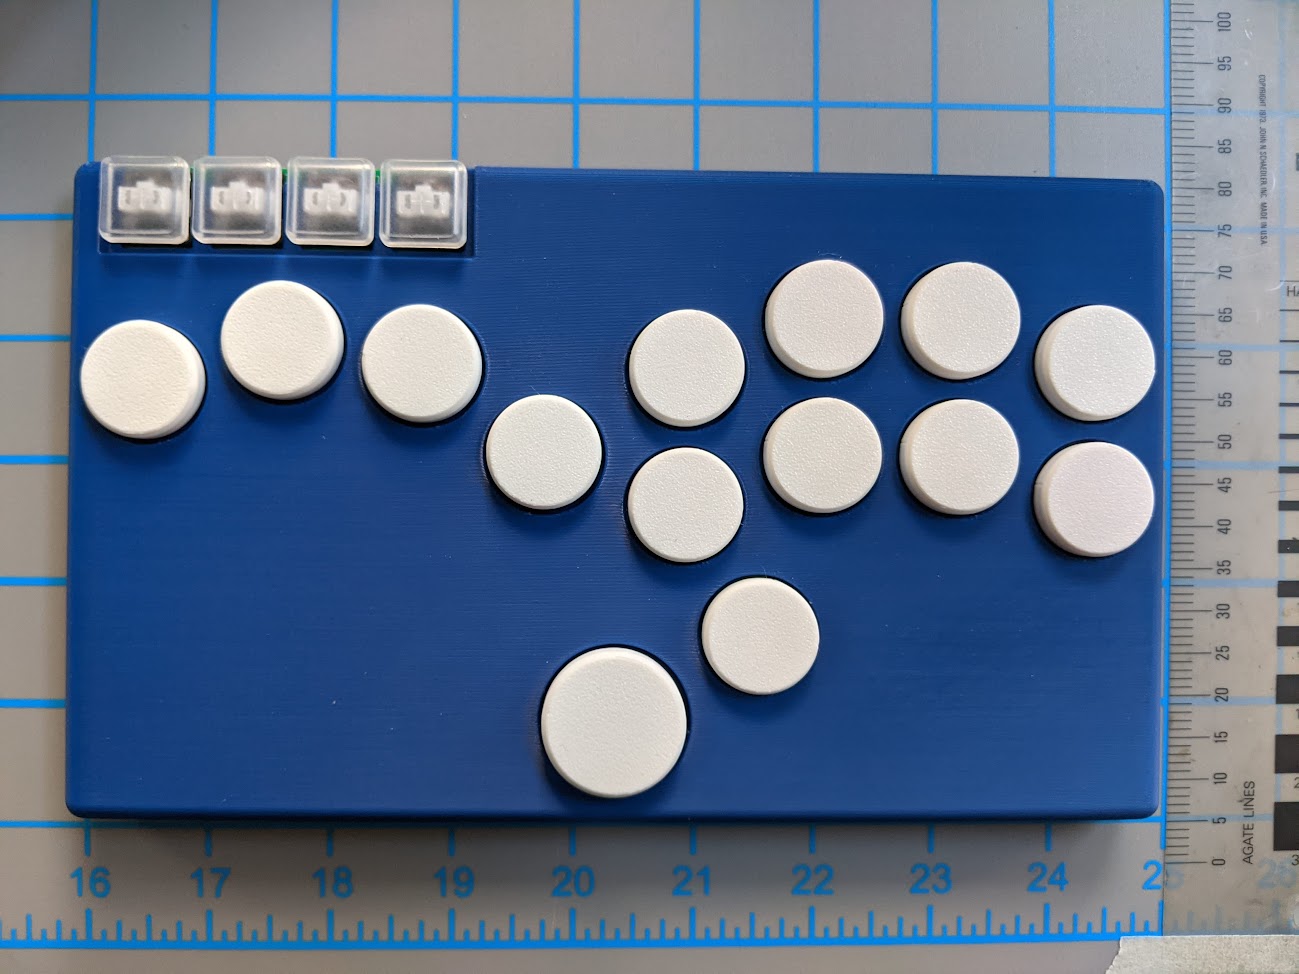 Blue case, white buttons, transparent menu buttons